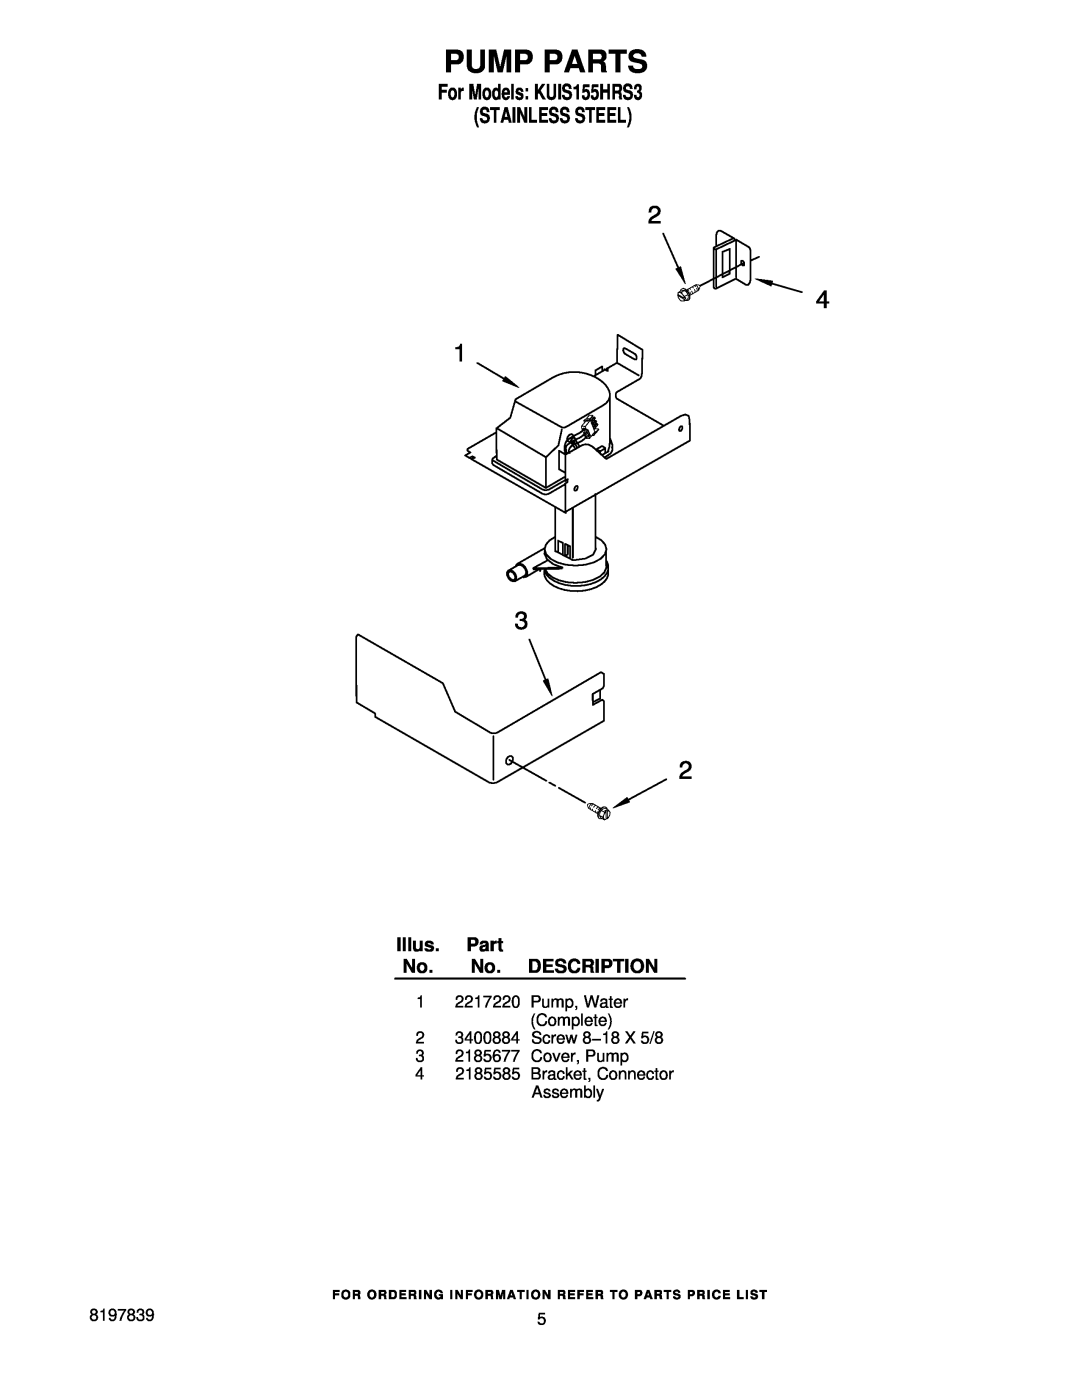 KitchenAid manual Pump Parts, For Models KUIS155HRS3 STAINLESS STEEL, Illus. Part No. No. DESCRIPTION 